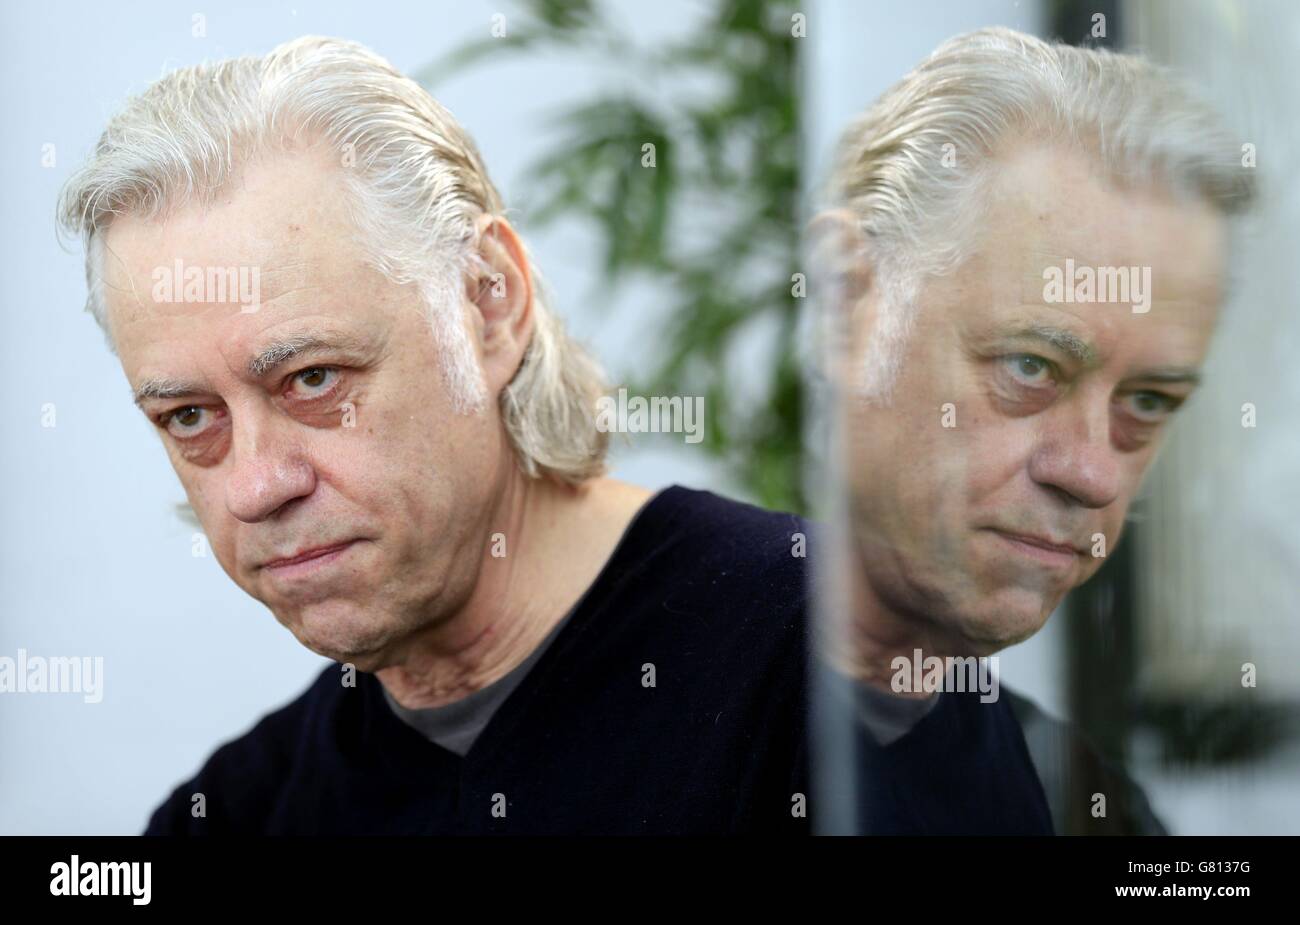 Bob Geldof en las oficinas de Kruger Cowne Ltd, Chelsea, Londres como Gran Bretaña está idealmente situado para estar "por delante de la curva" y podría beneficiarse del "vasto potencial" de África en el siglo 21, según el activista de la banda de ayuda. Foto de stock